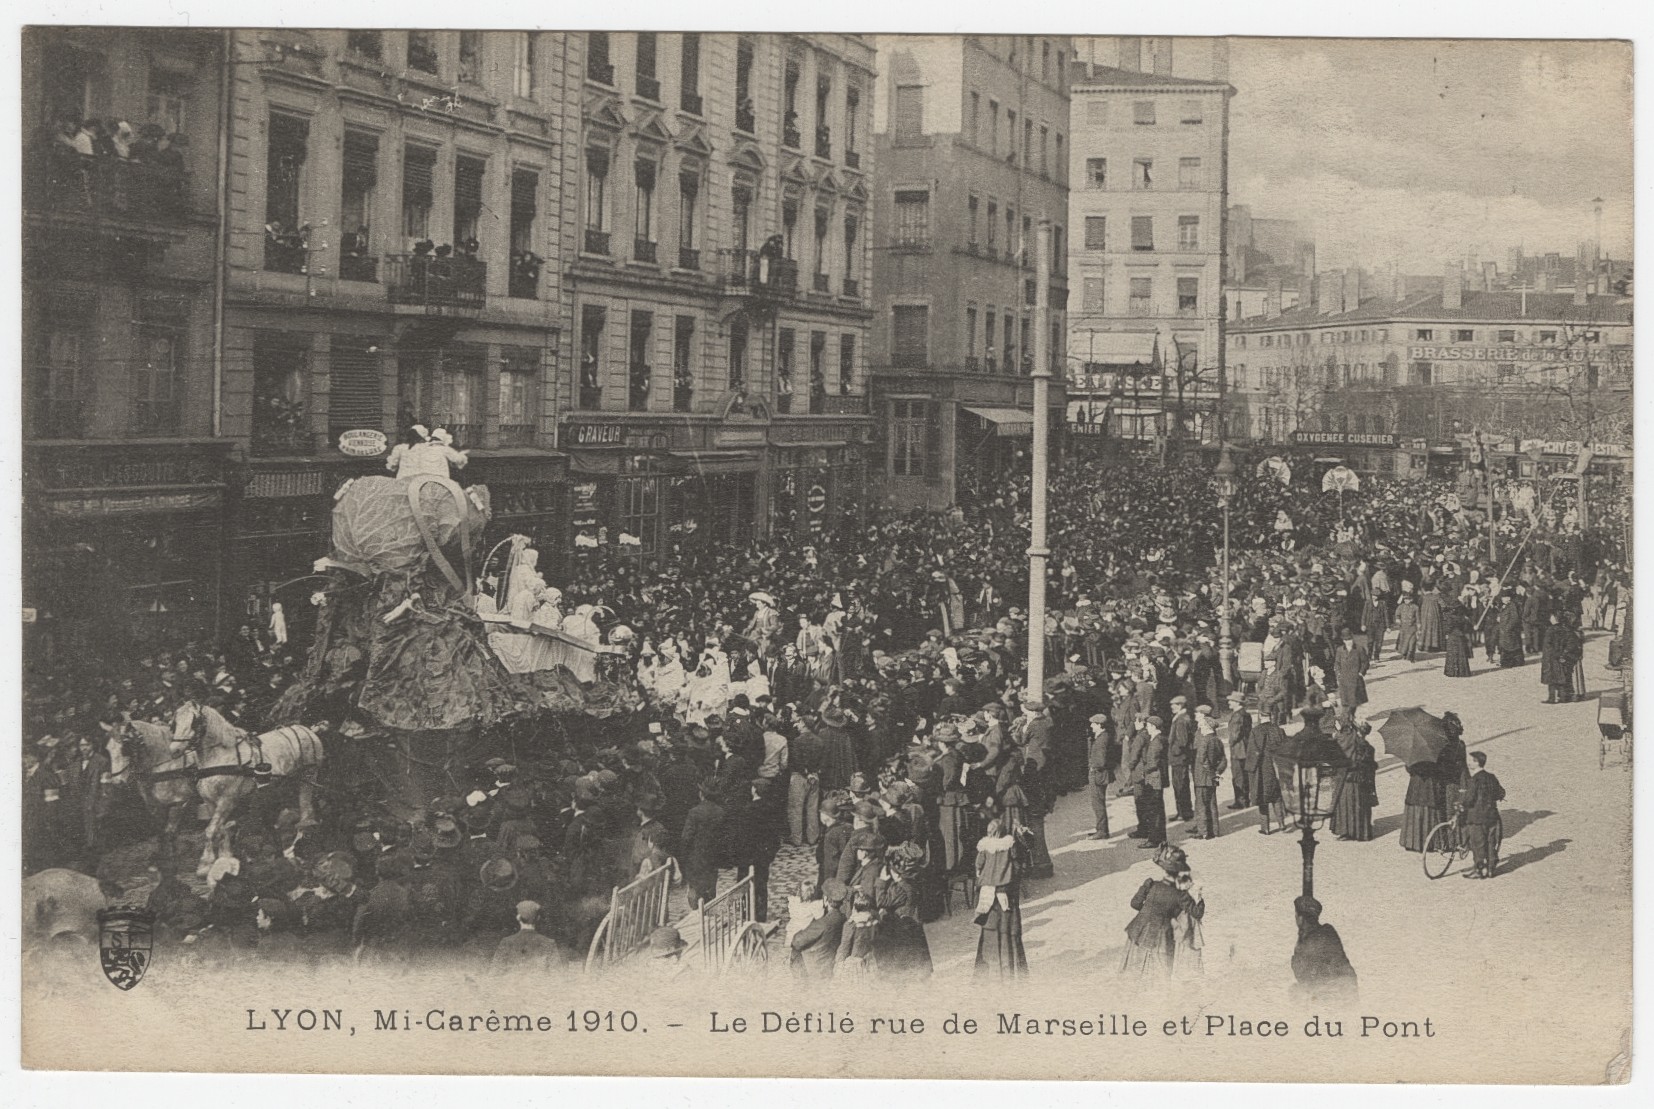 Lyon - Mi-carême 1910, le défilé rue de Marseille et place du Pont : carte postale NB (1910, cote : 4FI/3935)